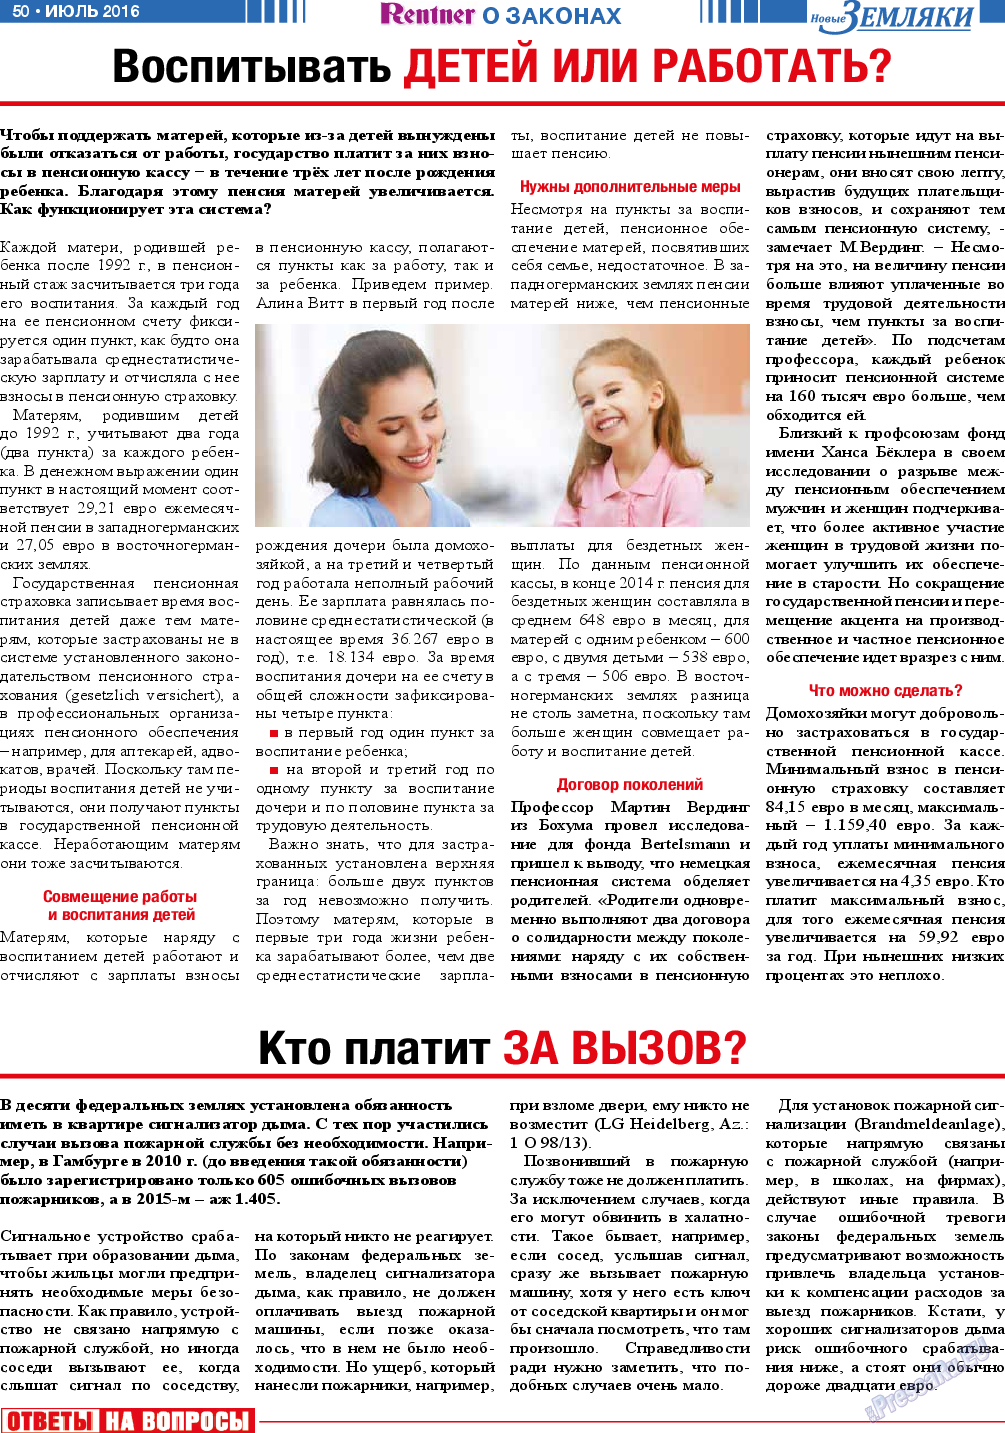 Новые Земляки, газета. 2016 №7 стр.50